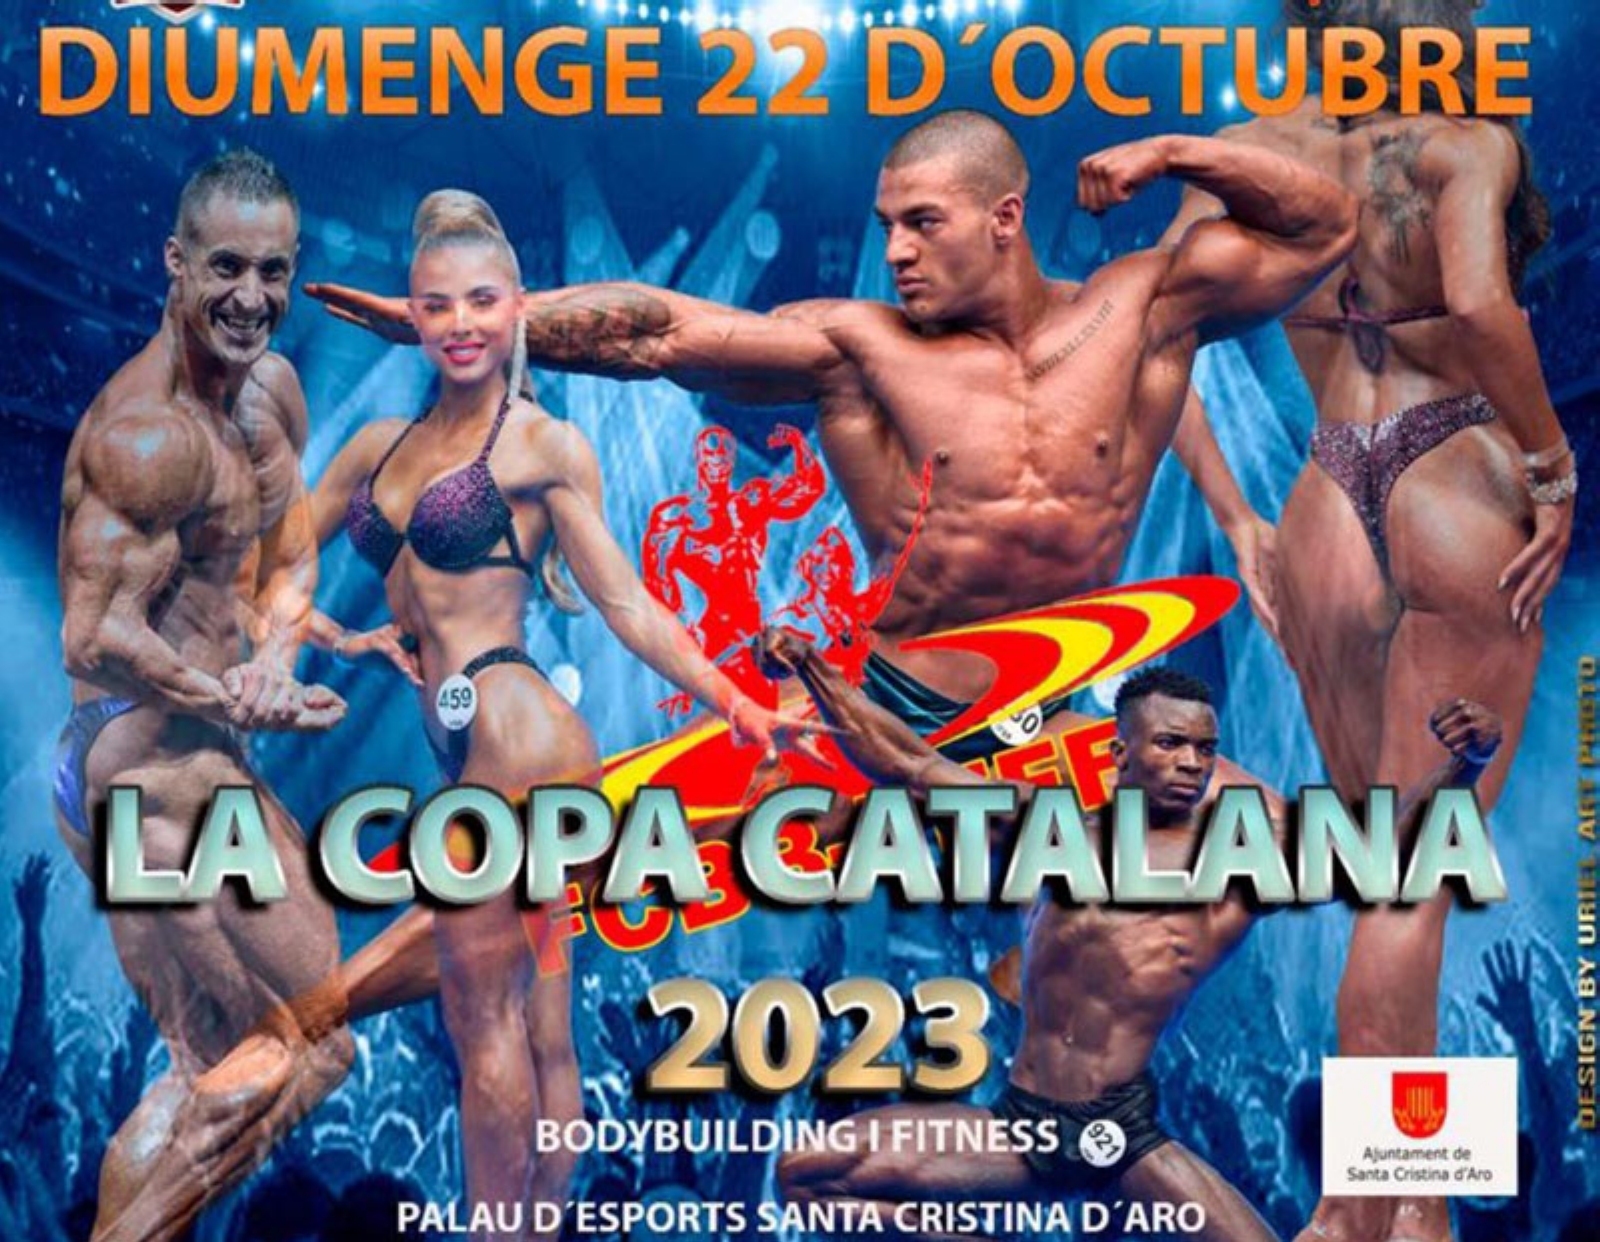 Una nueva edición de la Copa Catalana 2023